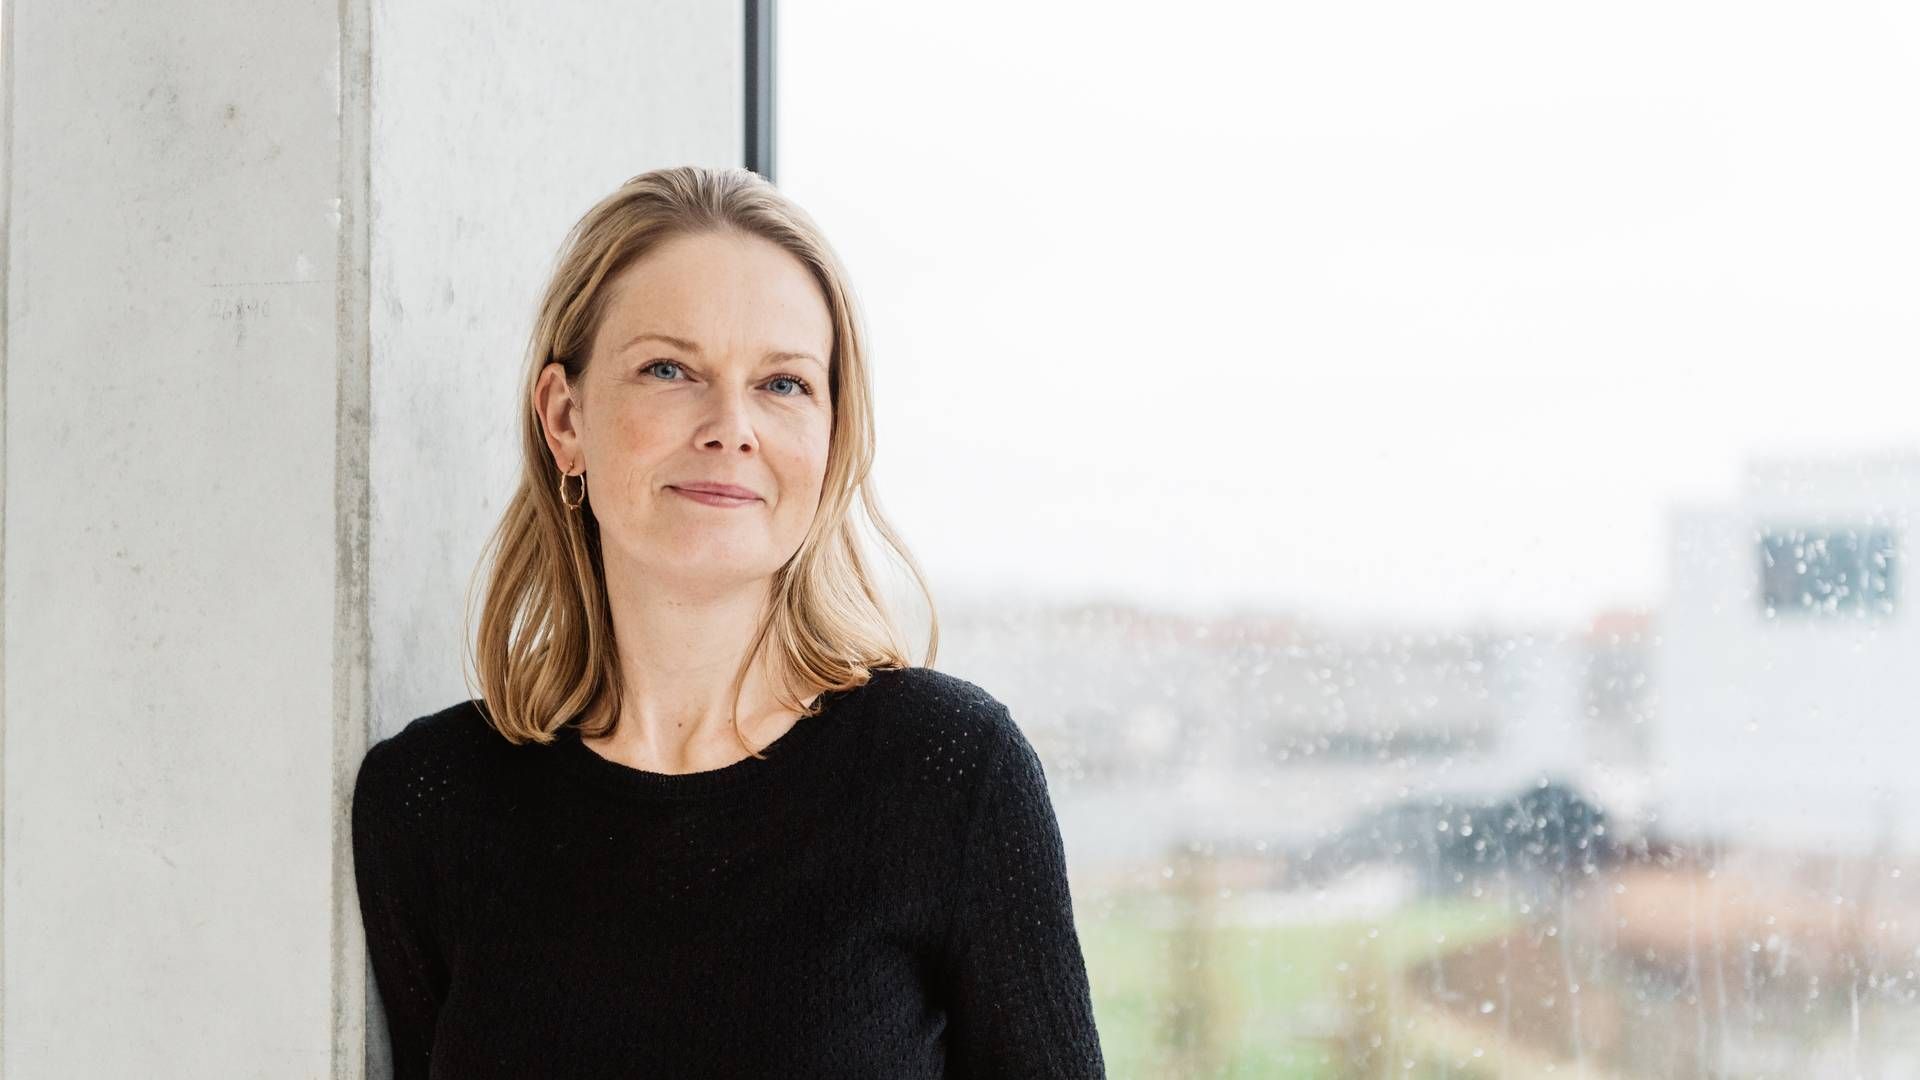 Hanne Salomonsen overtog posten som topchef for Gyldendal i september. Inden da havde hun siden 2008 været direktør for Gyldendal Uddannelse. | Foto: Pr/gyldendal